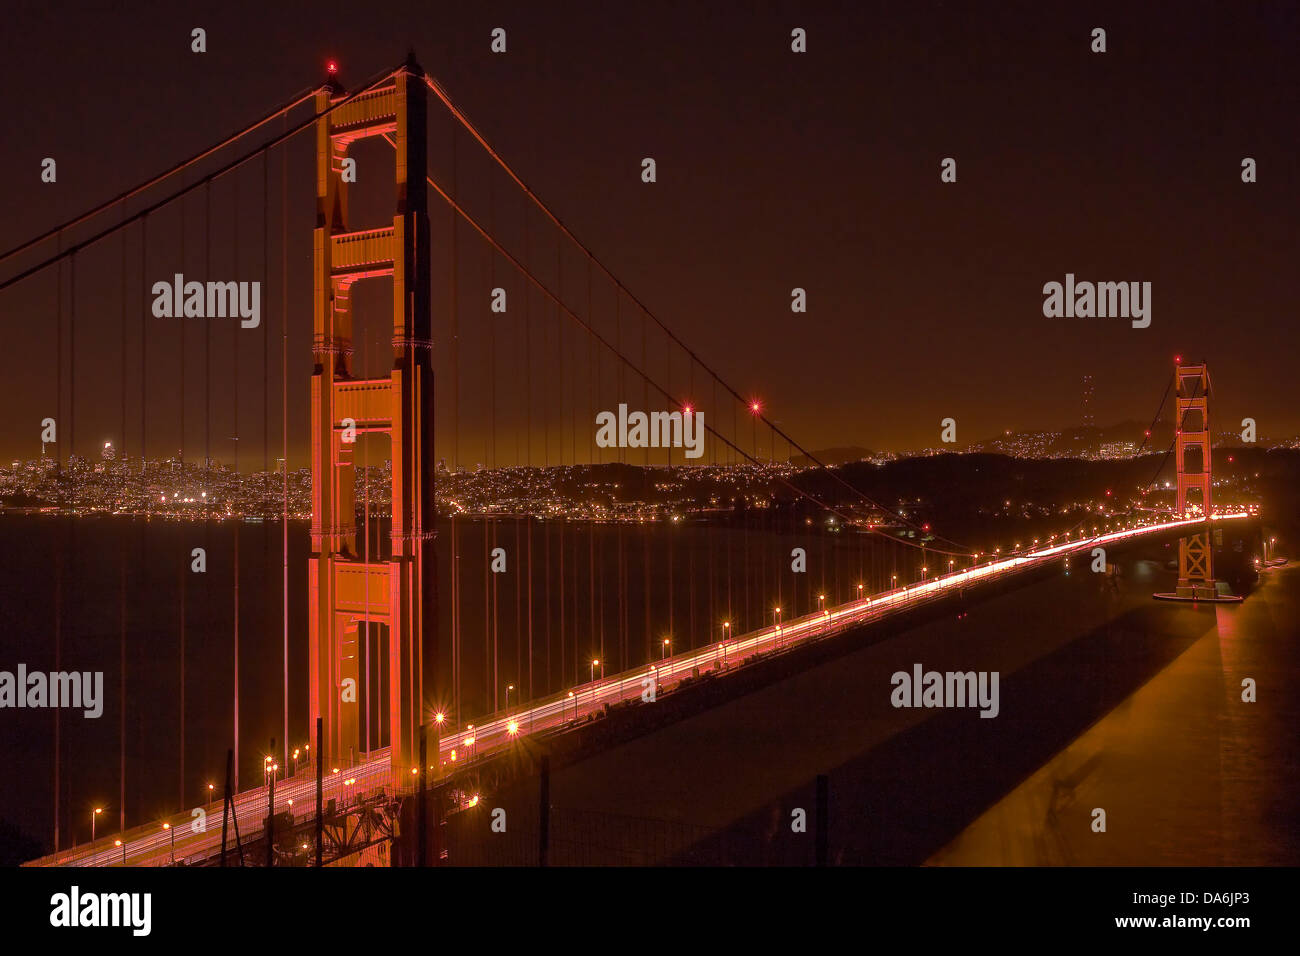 USA, USA, Amerika, Kalifornien, San Francisco, Hängebrücke, Brücke, Golden Gate, US Route 101, Sehenswürdigkeit, Stadt, Stockfoto